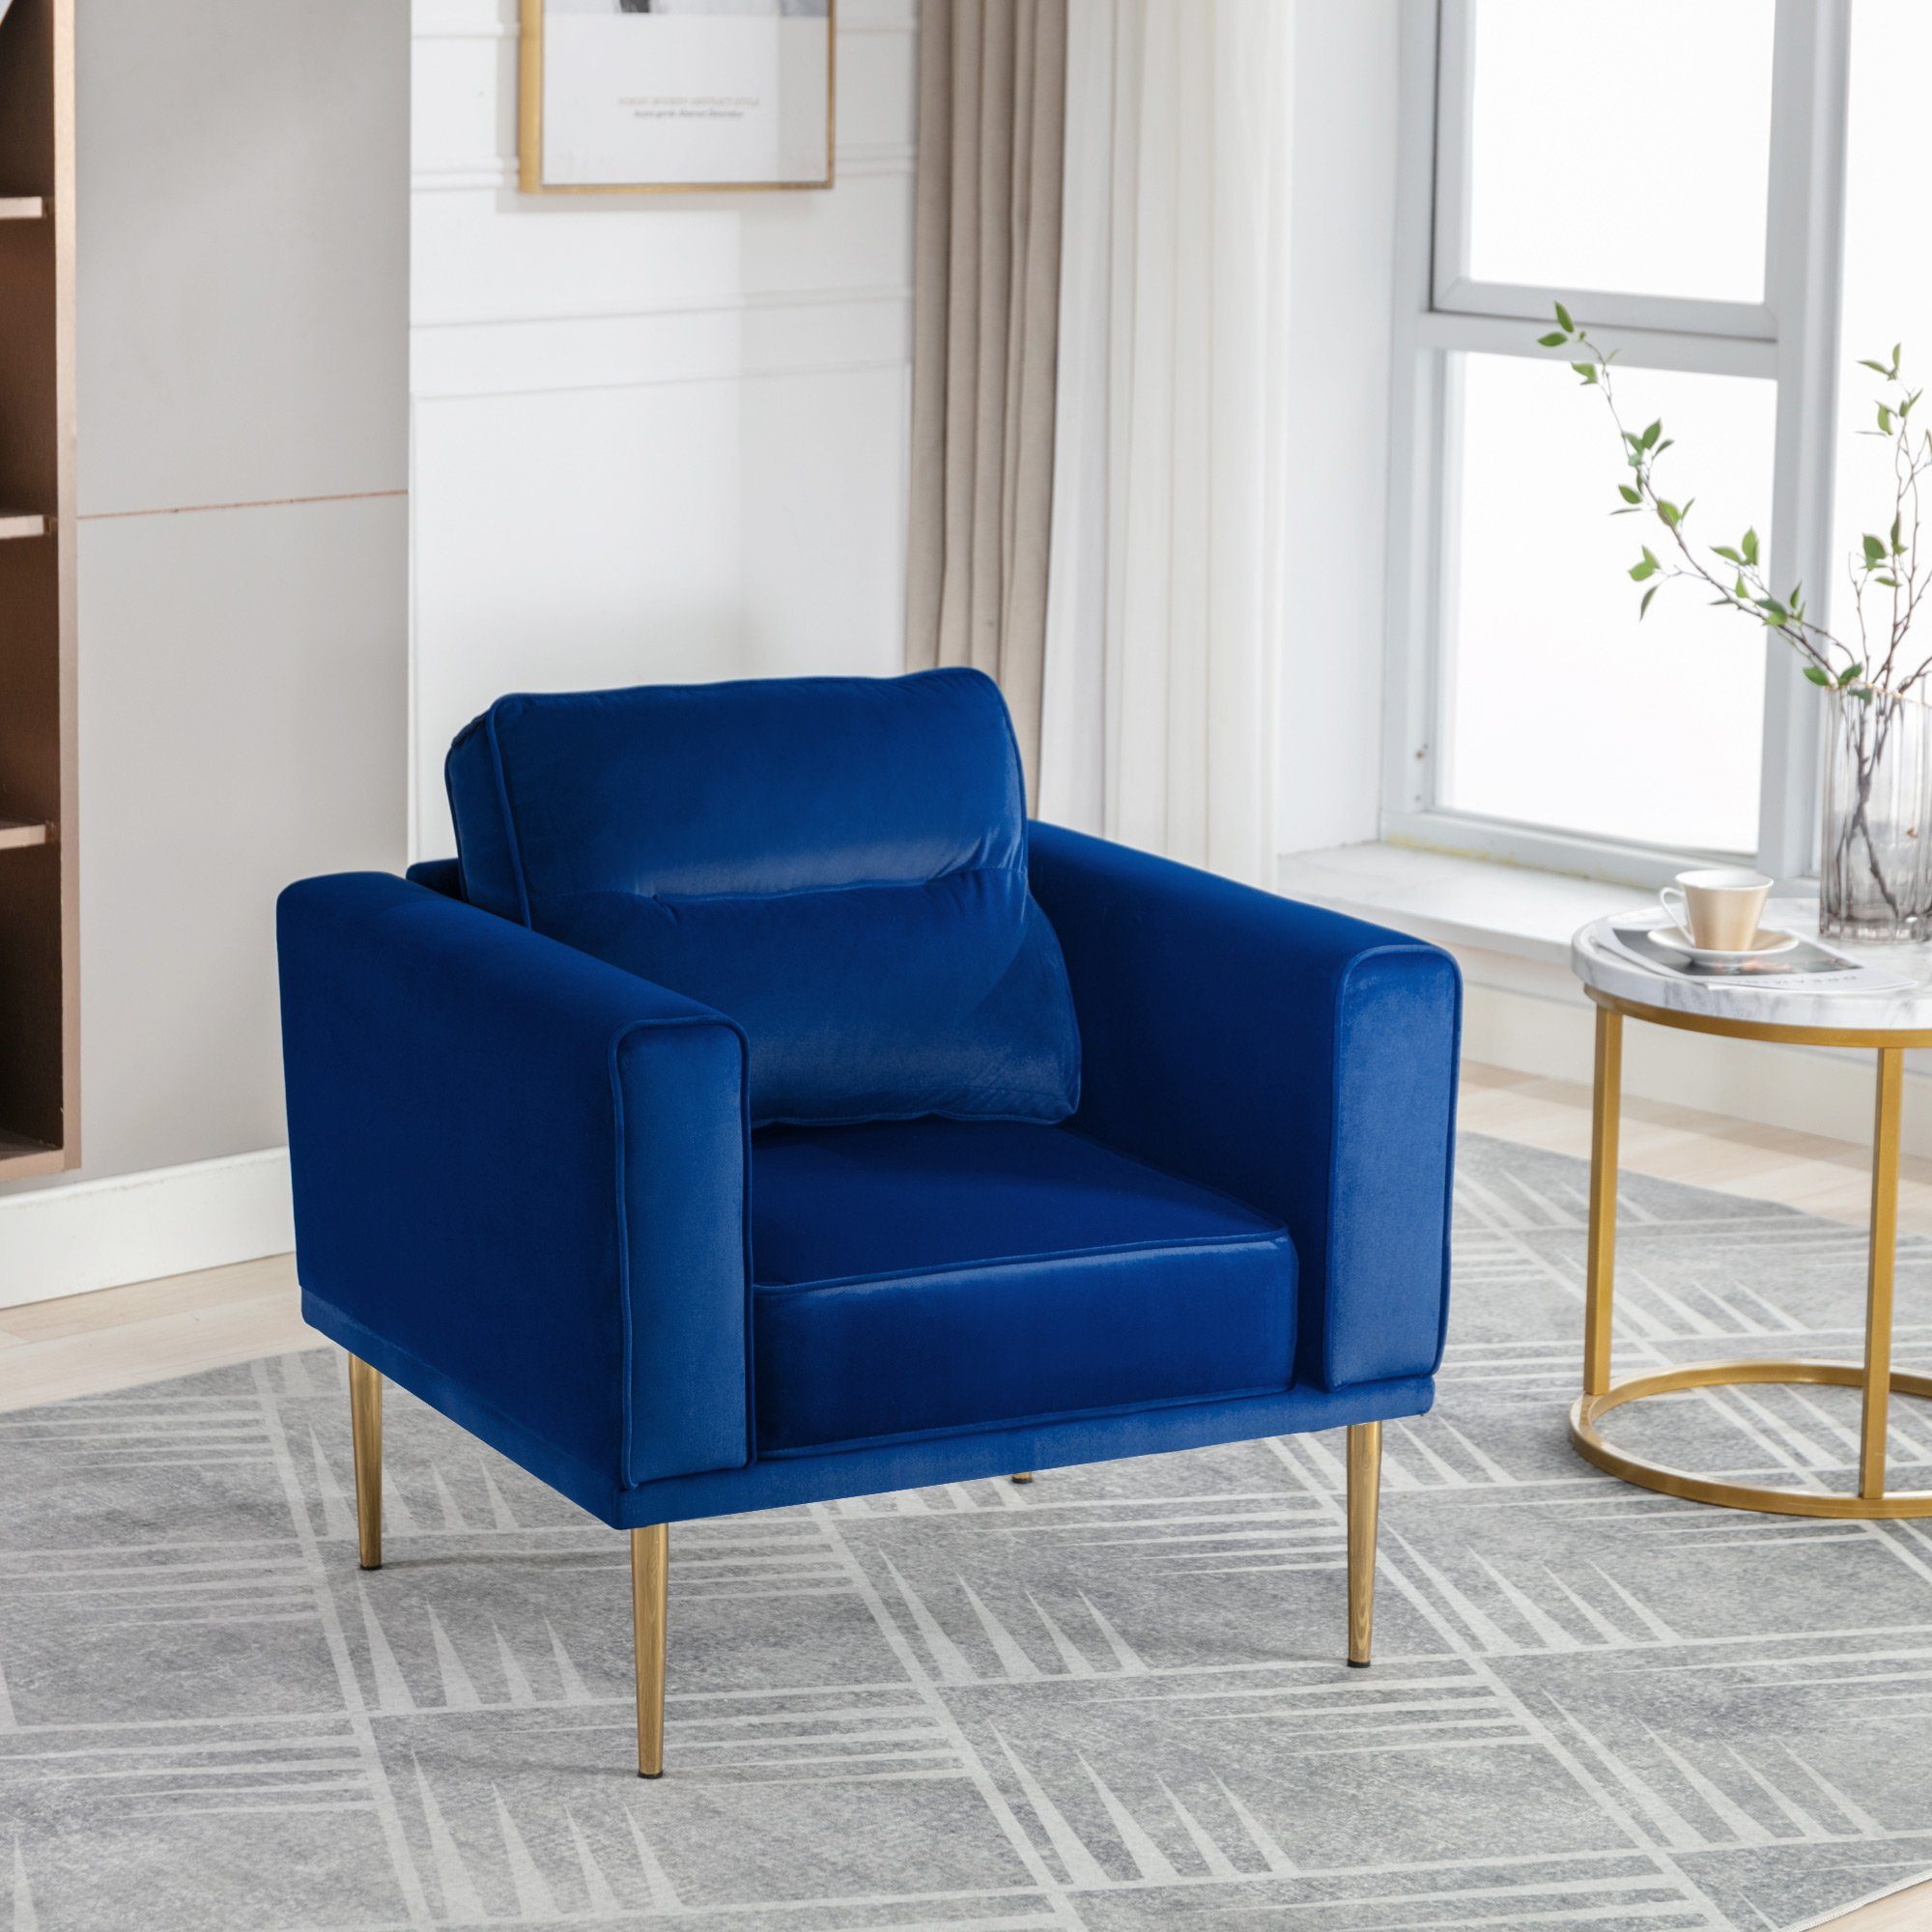 OKWISH Sessel Fernsehsessel, Loungesessel, Sessel mit Polster und Sitzkissen (lässiger Sessel), Roségold-Metallbeine, moderner einfacher Samtstuhl blau | Einzelsessel